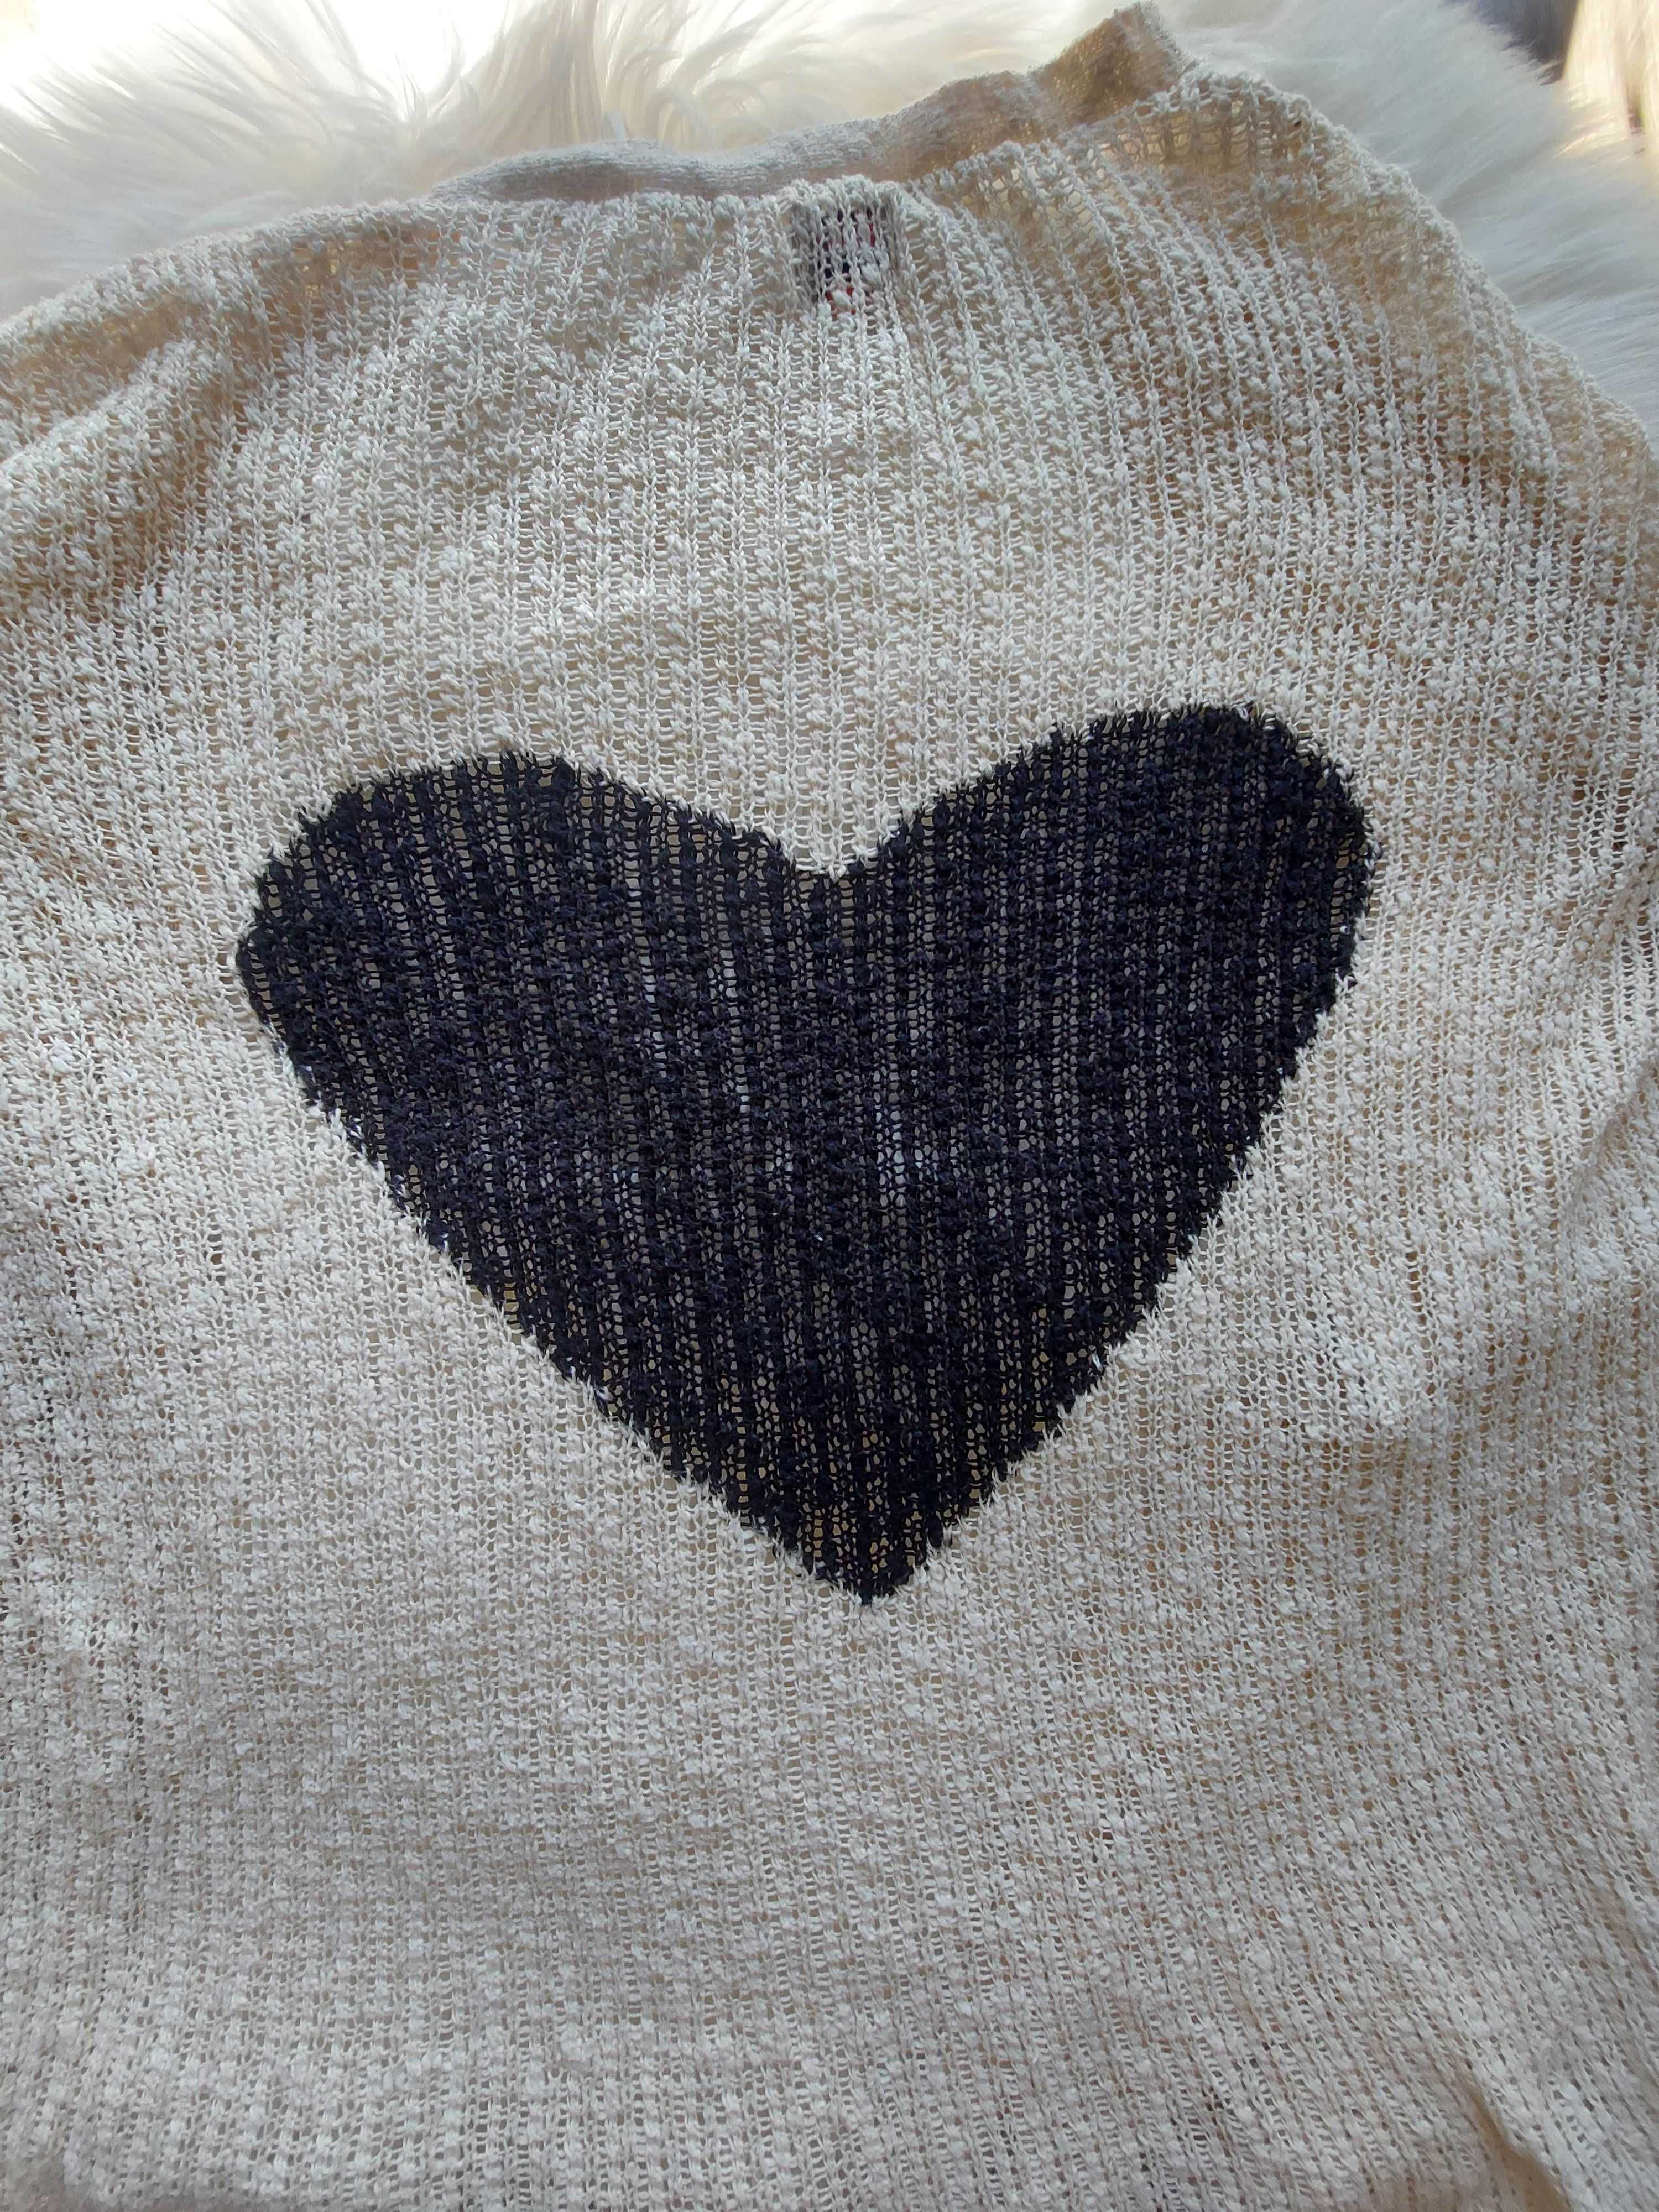 Beżowy/kremowy sweter/kardigan z serduszkiem na plecach, ONLY, M